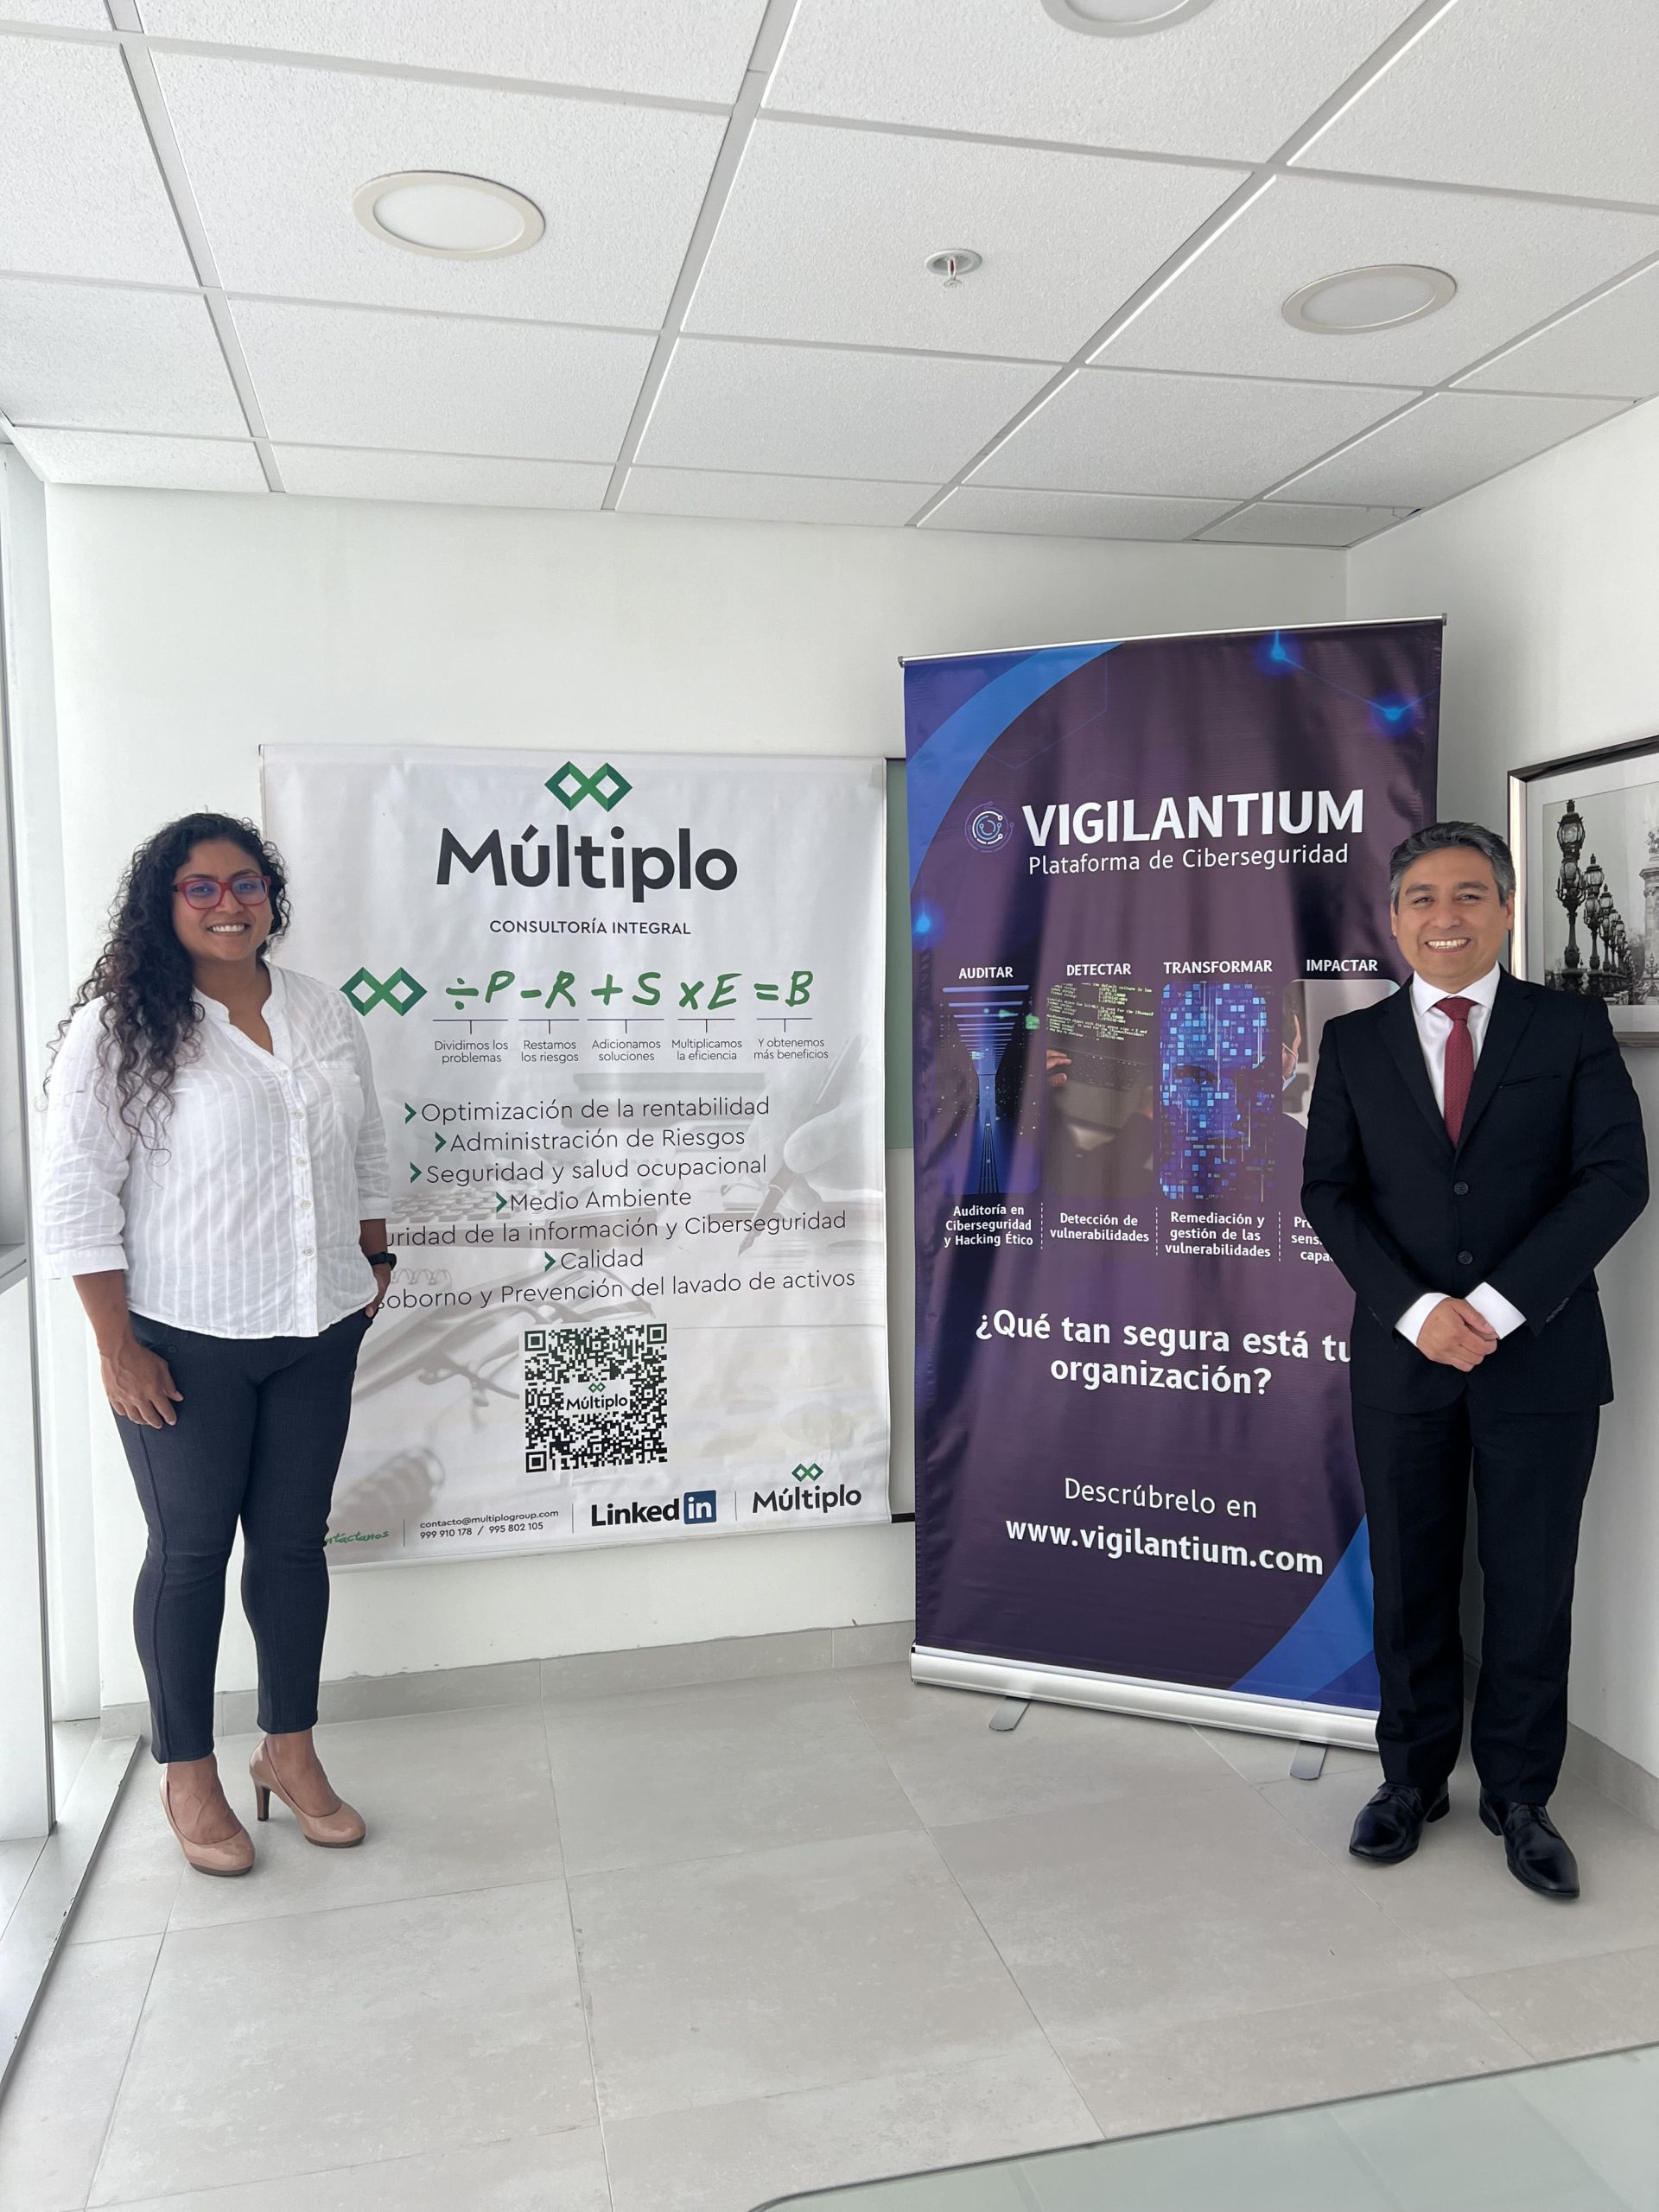 Vigilantium y Multiplo se unen para ofrecer servicios de Ciberseguridad al segmento Corporativo